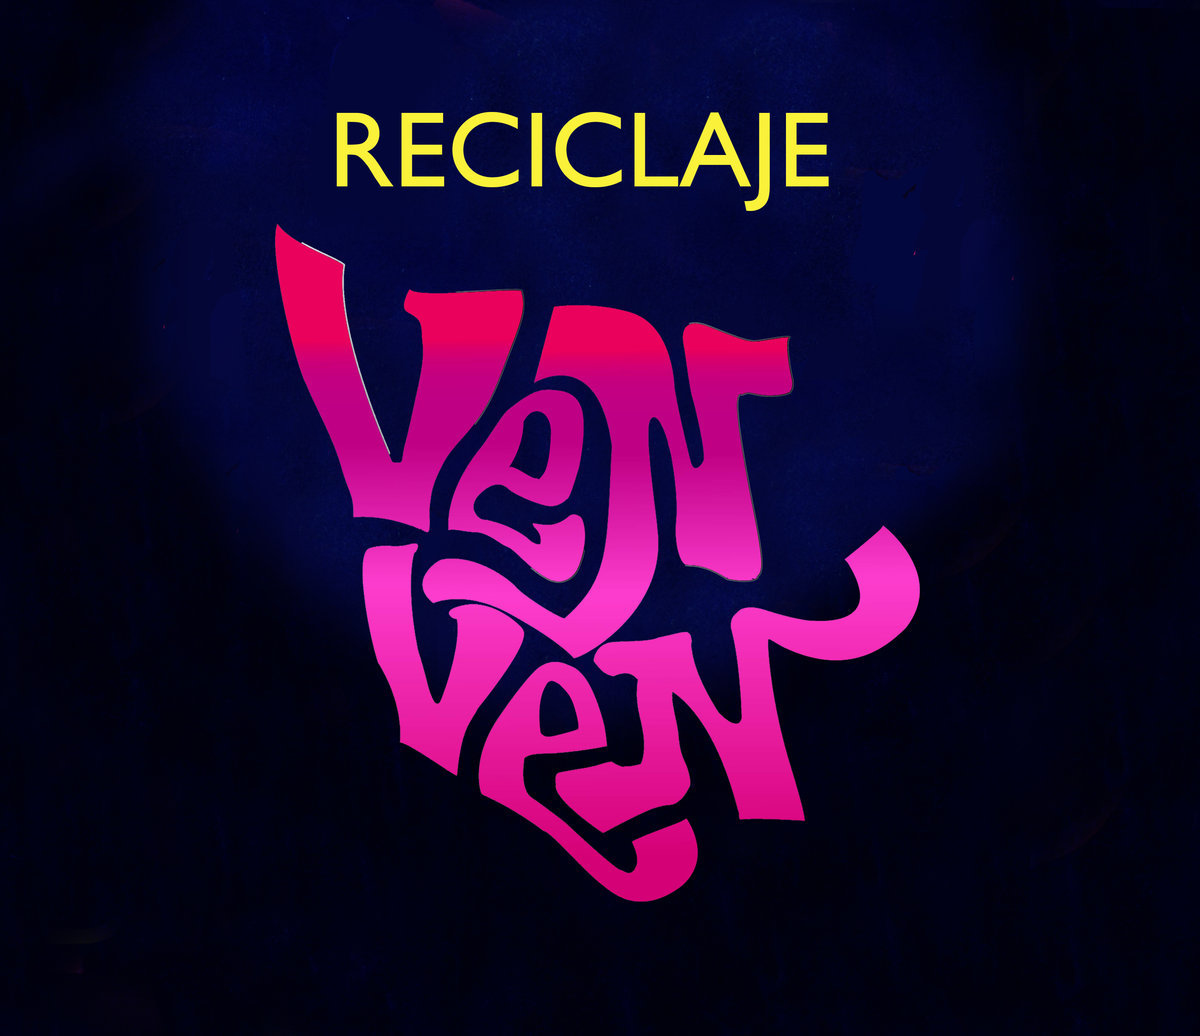 La banda grancanaria Reciclaje presenta ‘Ven Ven’, su nuevo trabajo discográfico